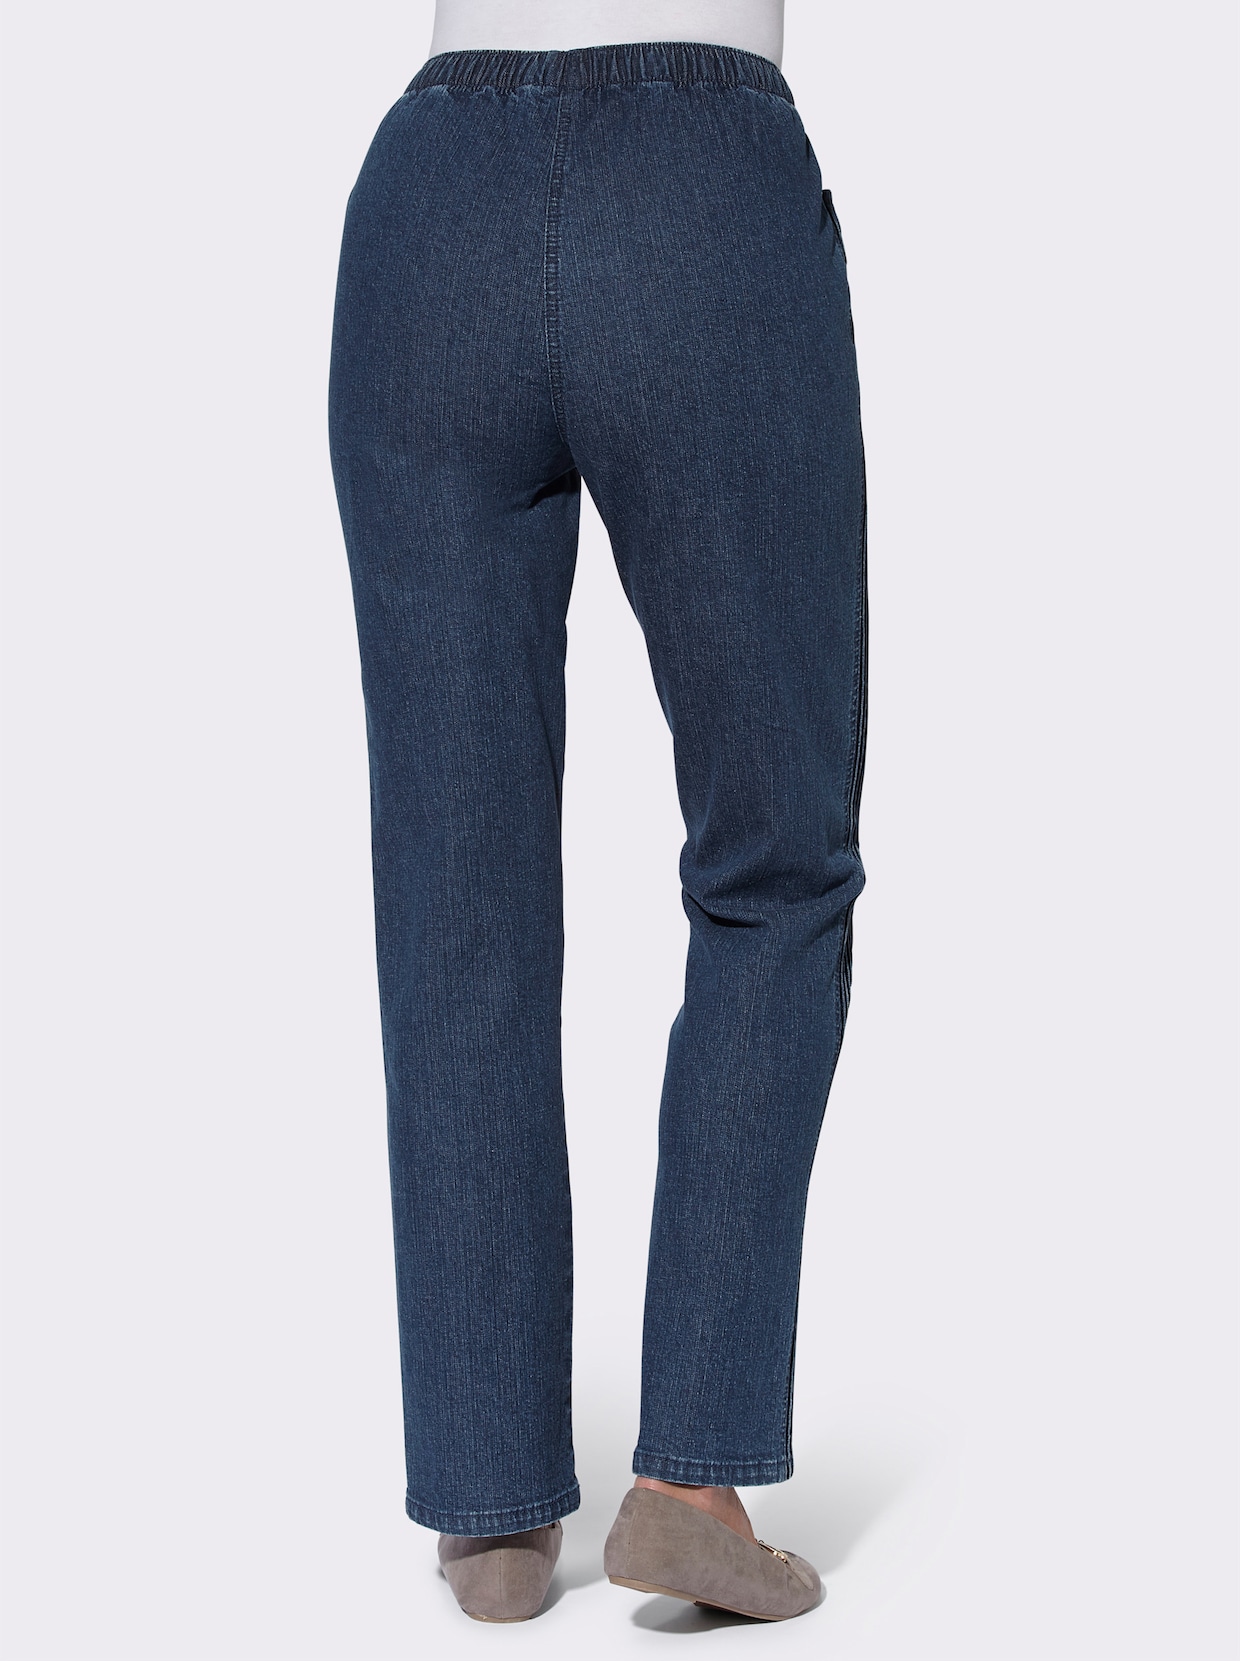 Jeans - mörkblå, stentvättade